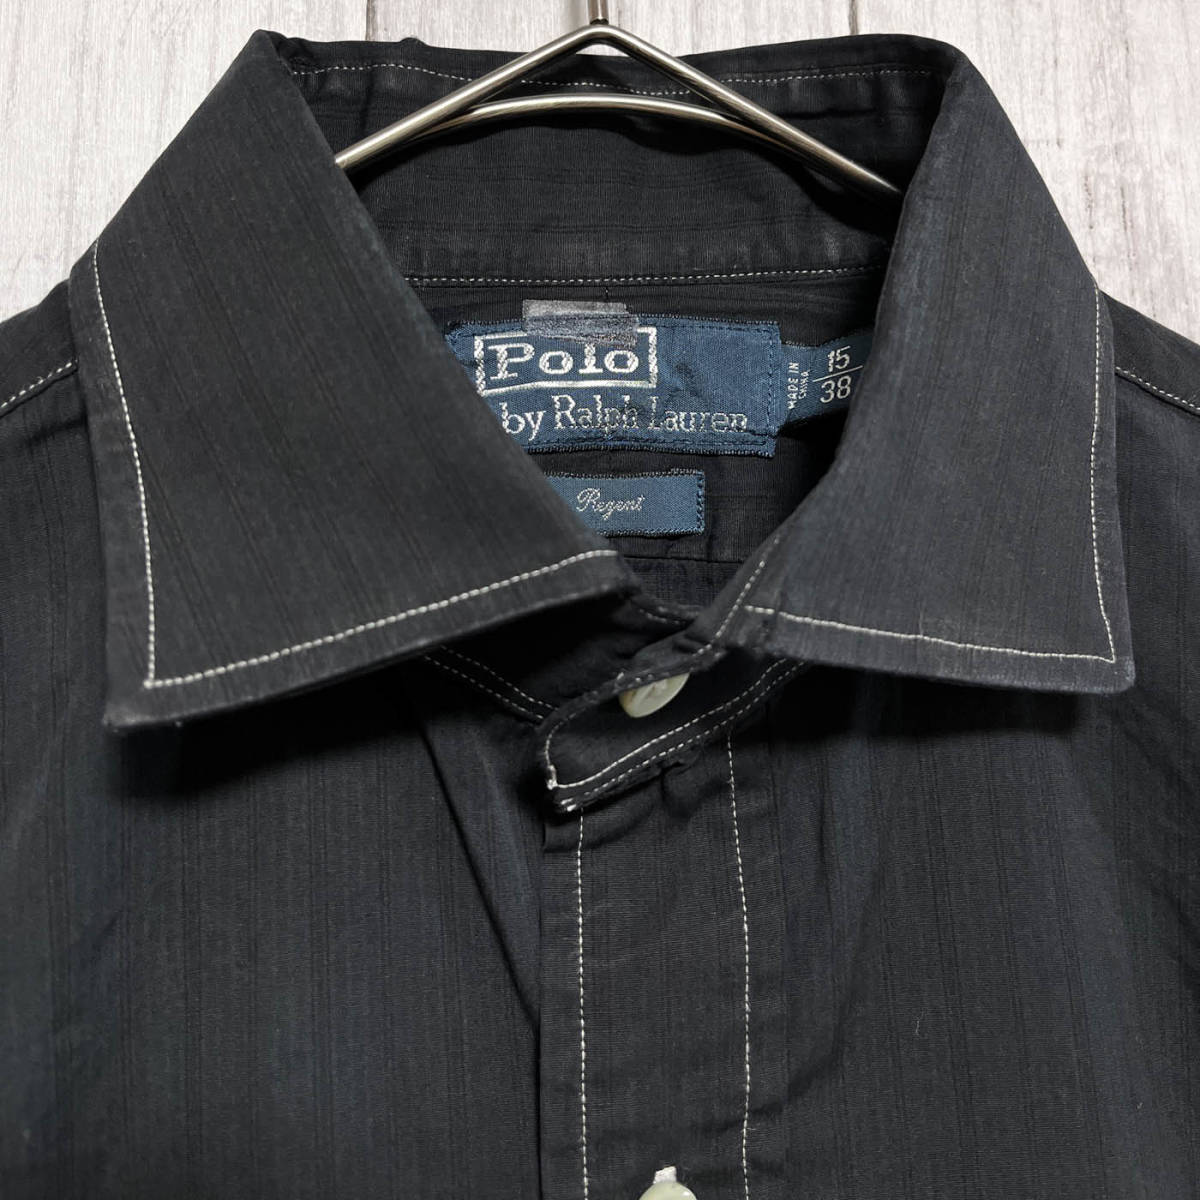 ラルフローレン Ralph Lauren ストライプシャツ 長袖シャツ メンズ ワンポイント コットン100% サイズ15 S~Mサイズ 5‐51_画像4